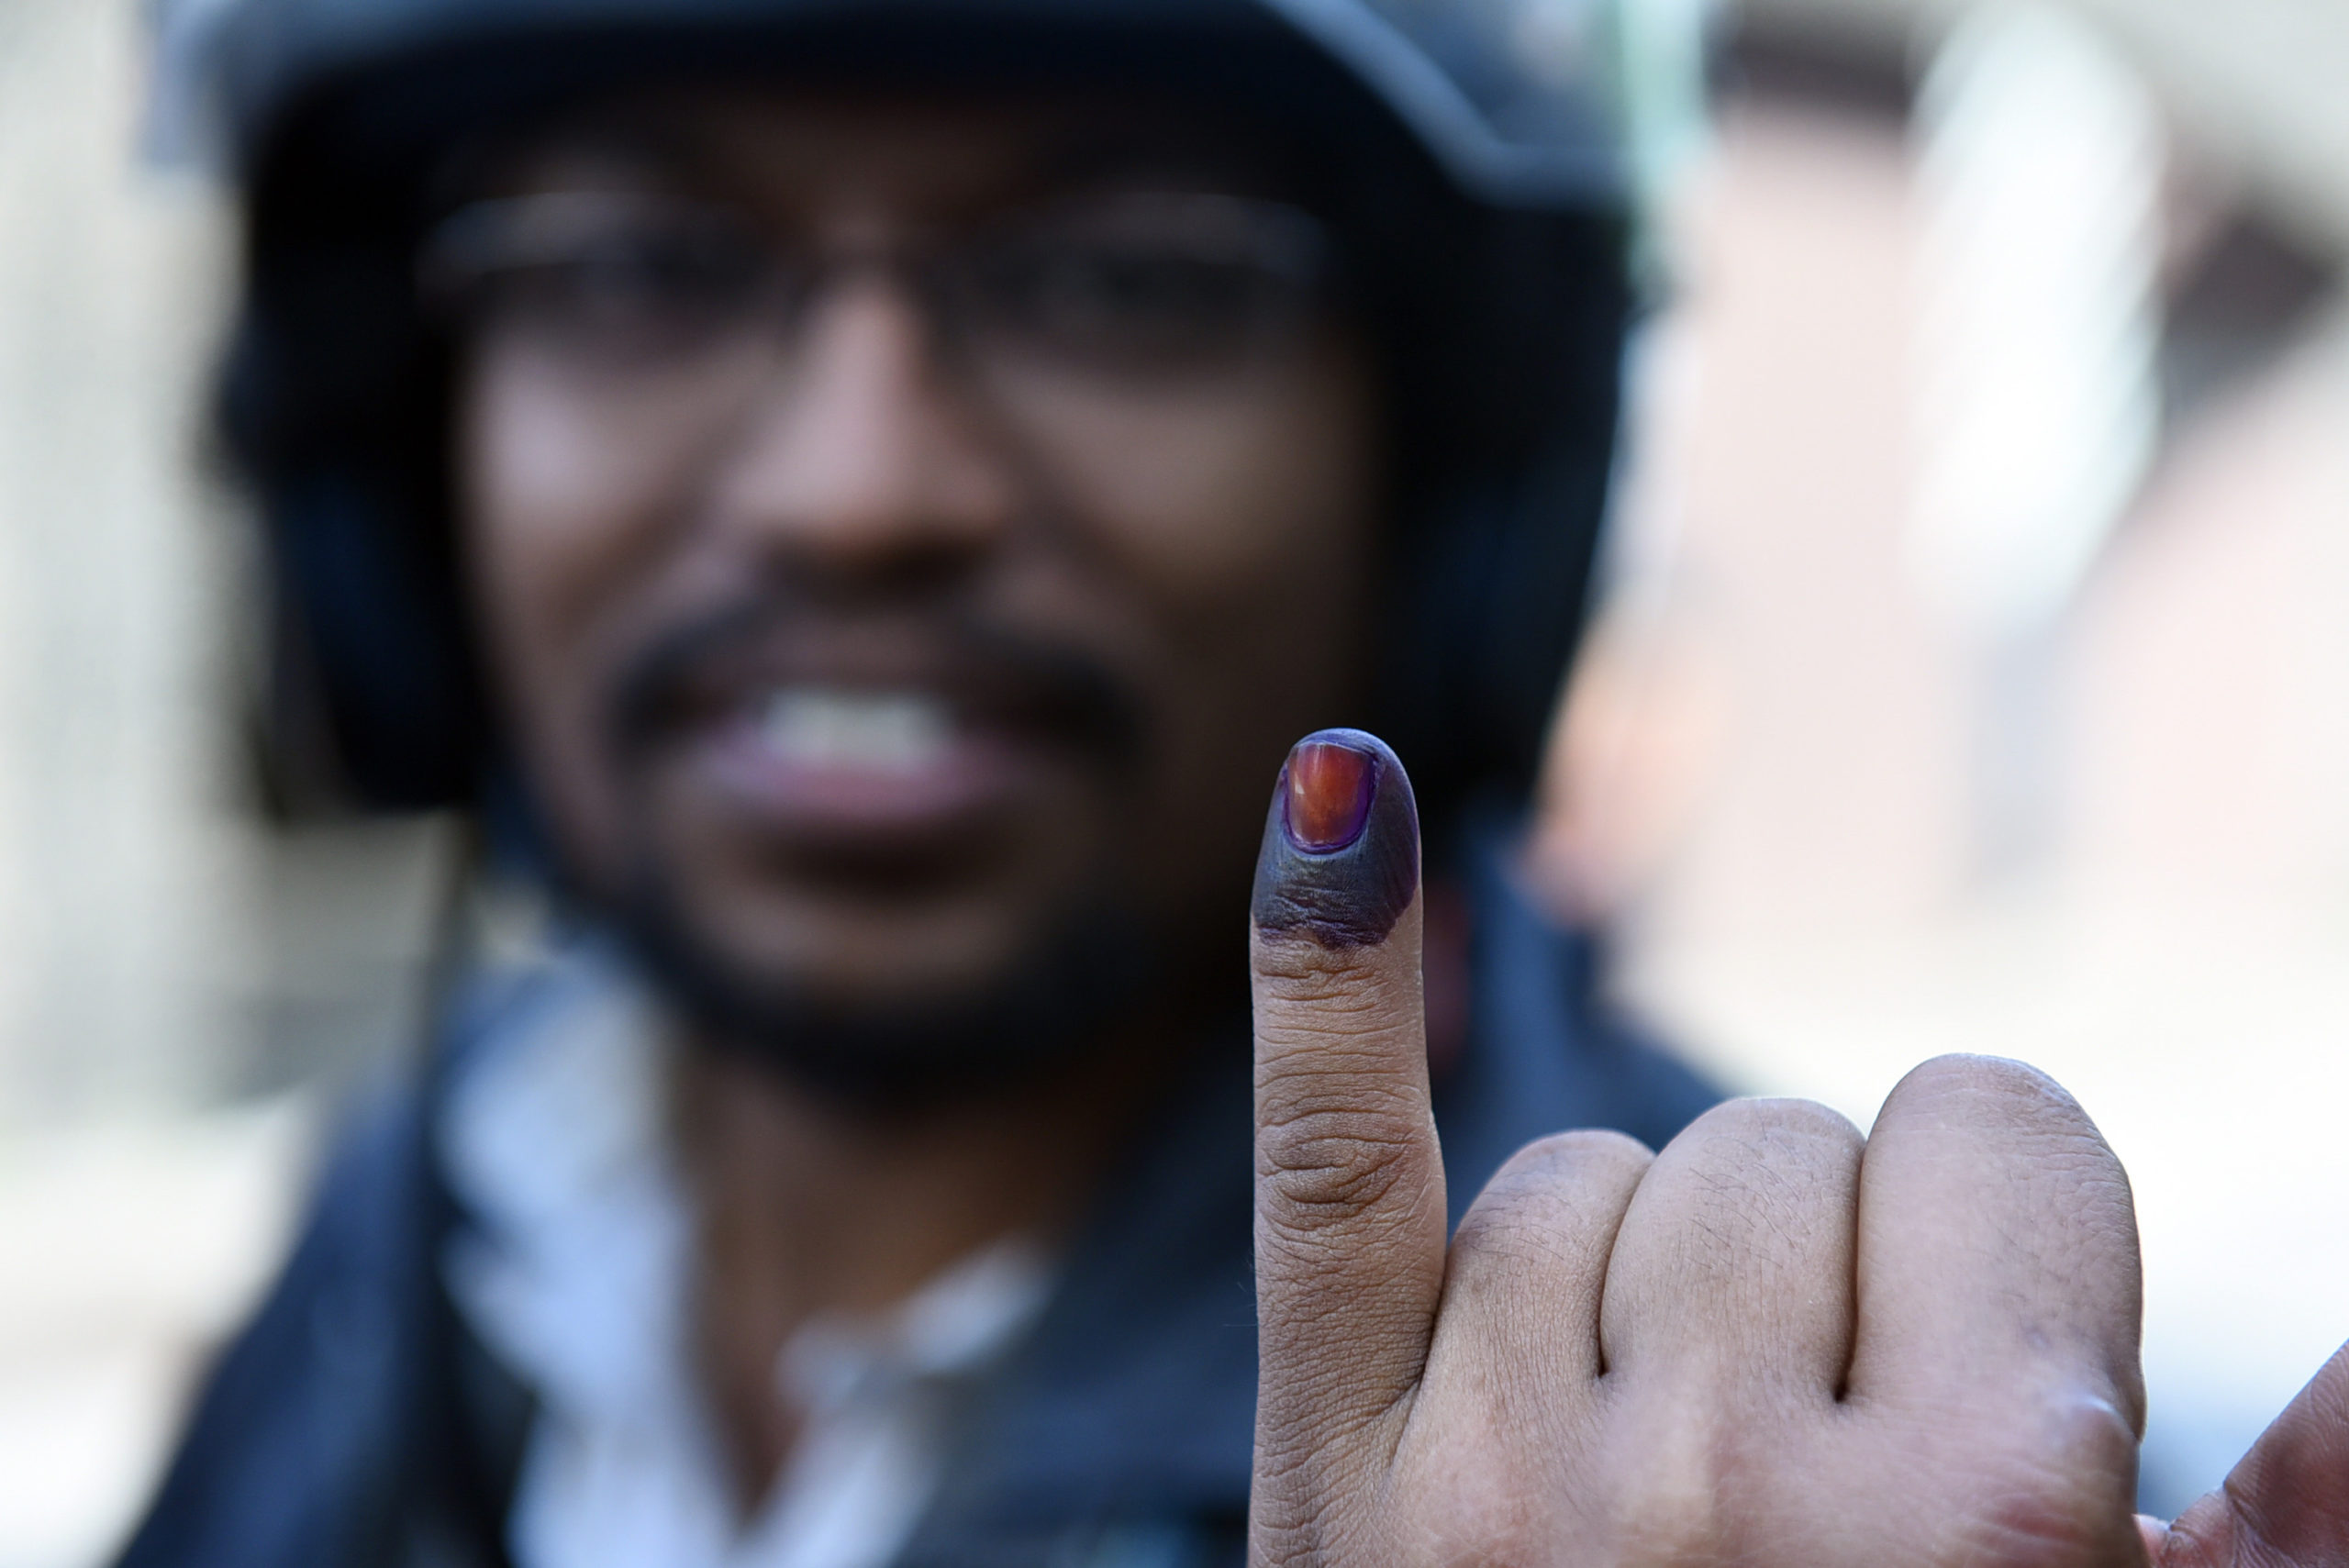 Sri Lanka polls